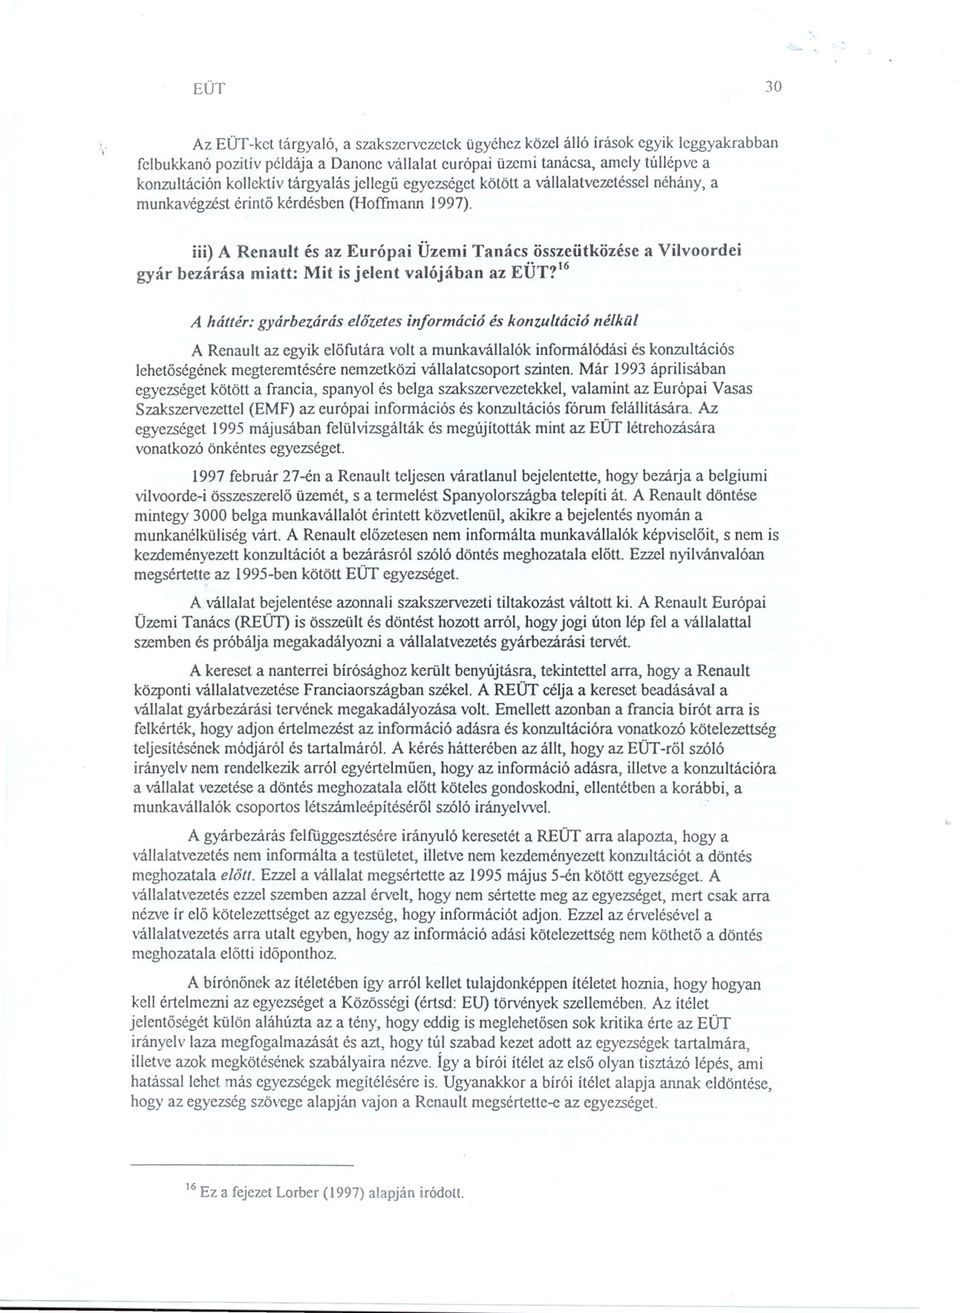 tárgyalás jellegü egyezséget kötött a vállalatvezetéssei néhány, a munkavégzést érinto kérdésben (Hoffmann 1997).